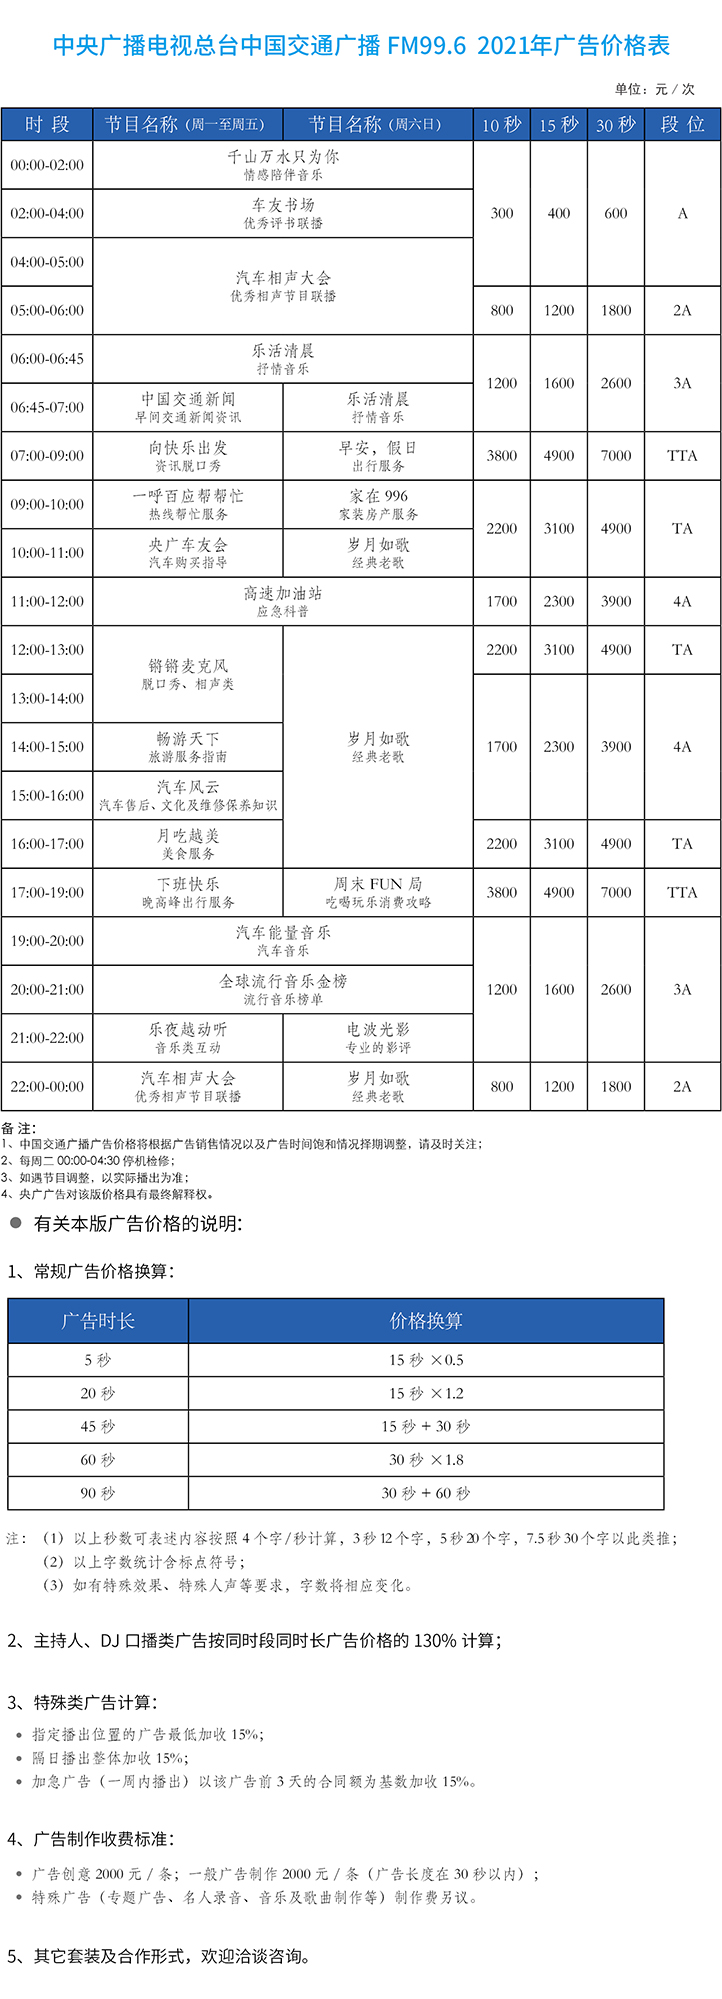 2021年中央人民广播电台交通广播价格表.jpg